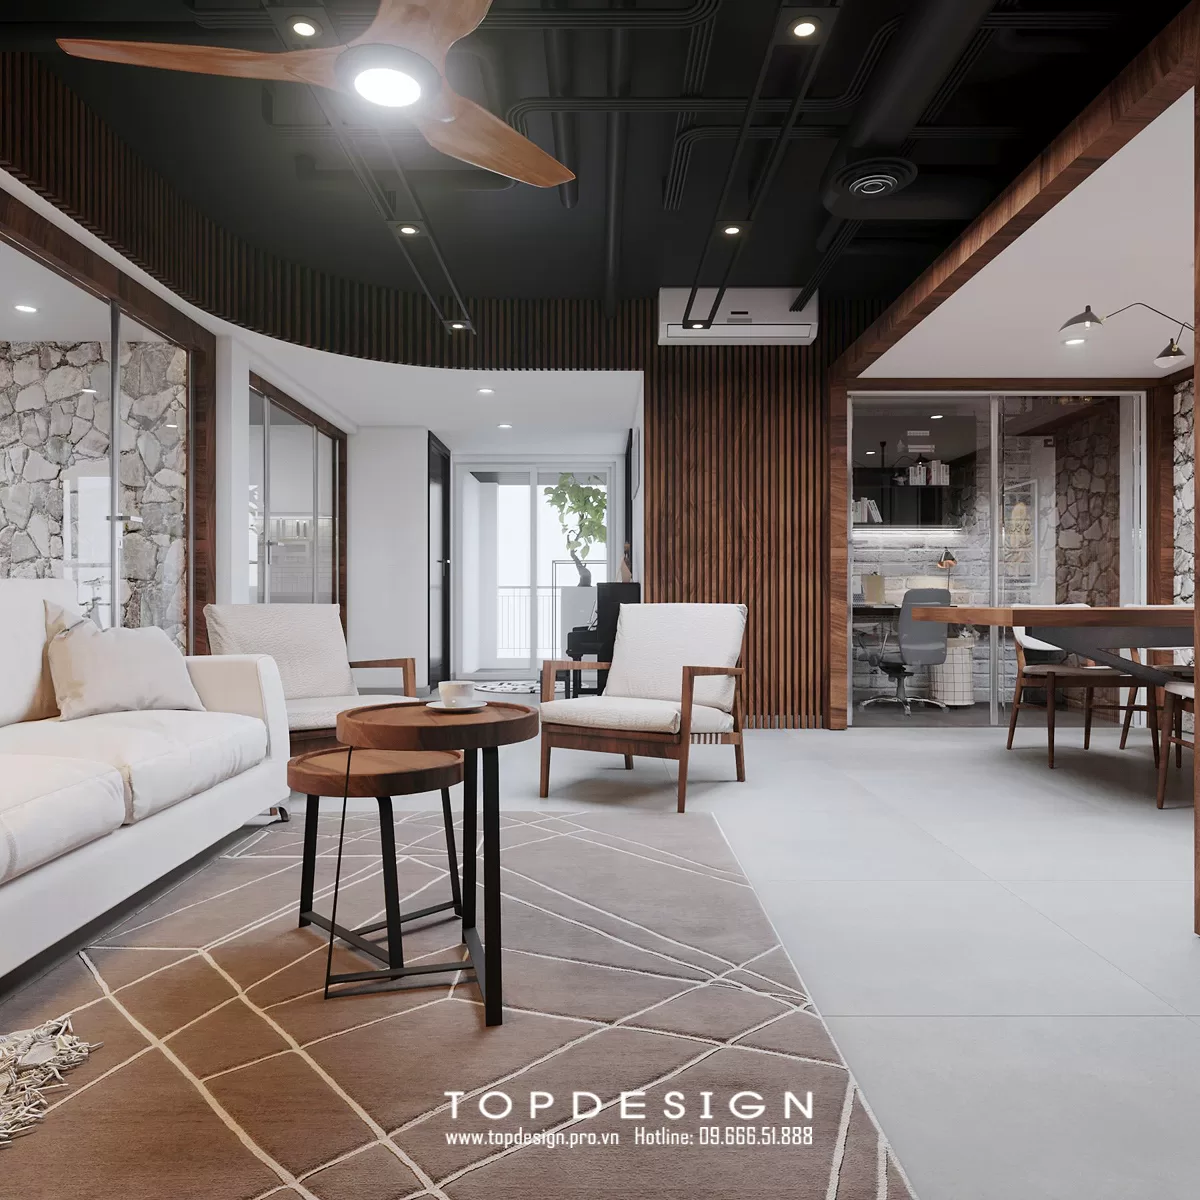 Thiết kế nội thất nhà phố hiện đại - TOPDESIGN - 28